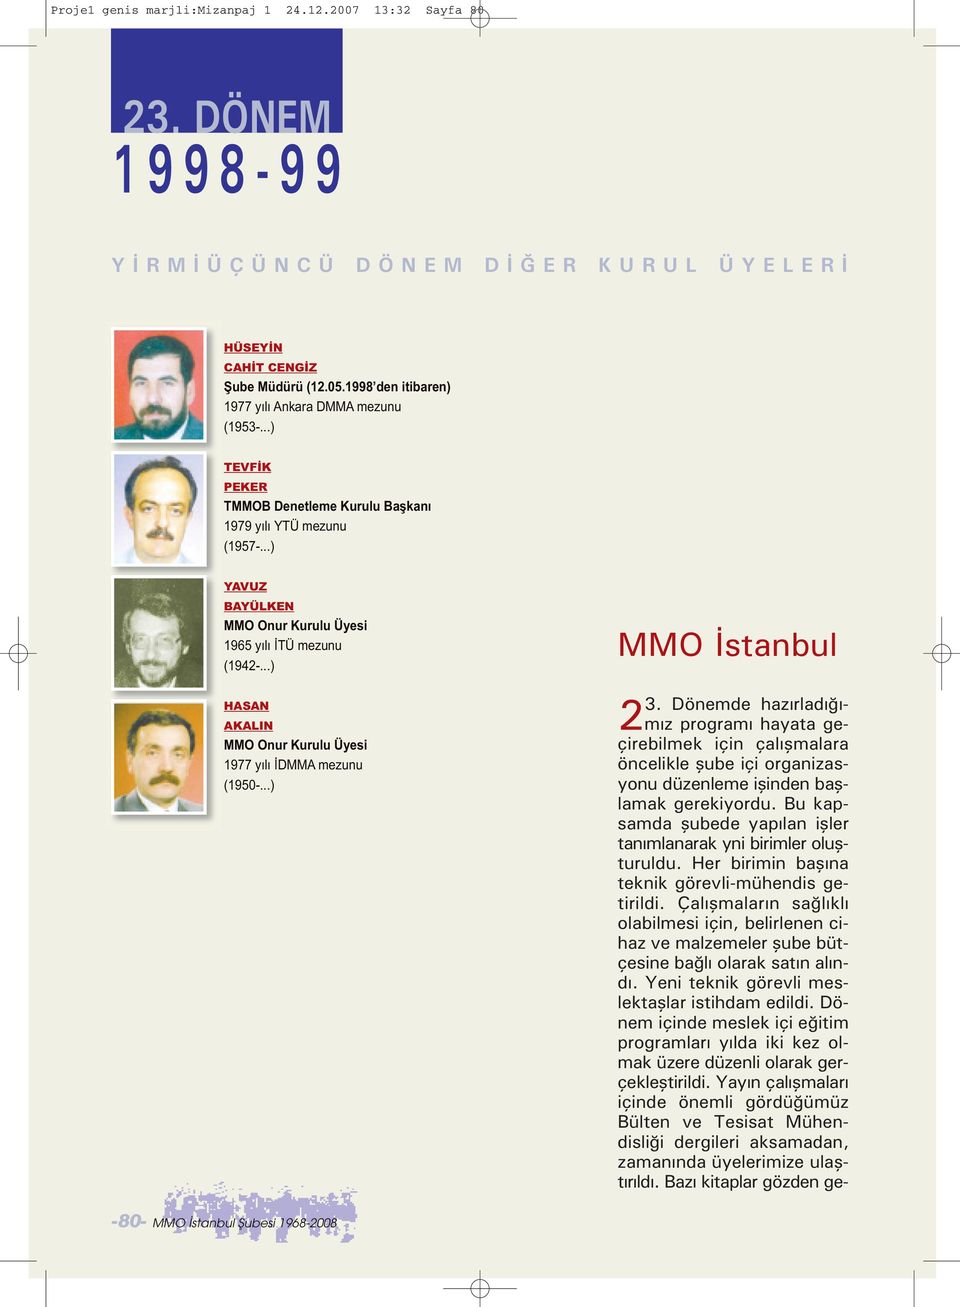 ..) HASAN AKALIN MMO Onur Kurulu Üyesi 1977 yılı İDMMA mezunu (1950-...) MMO İstanbul 3.